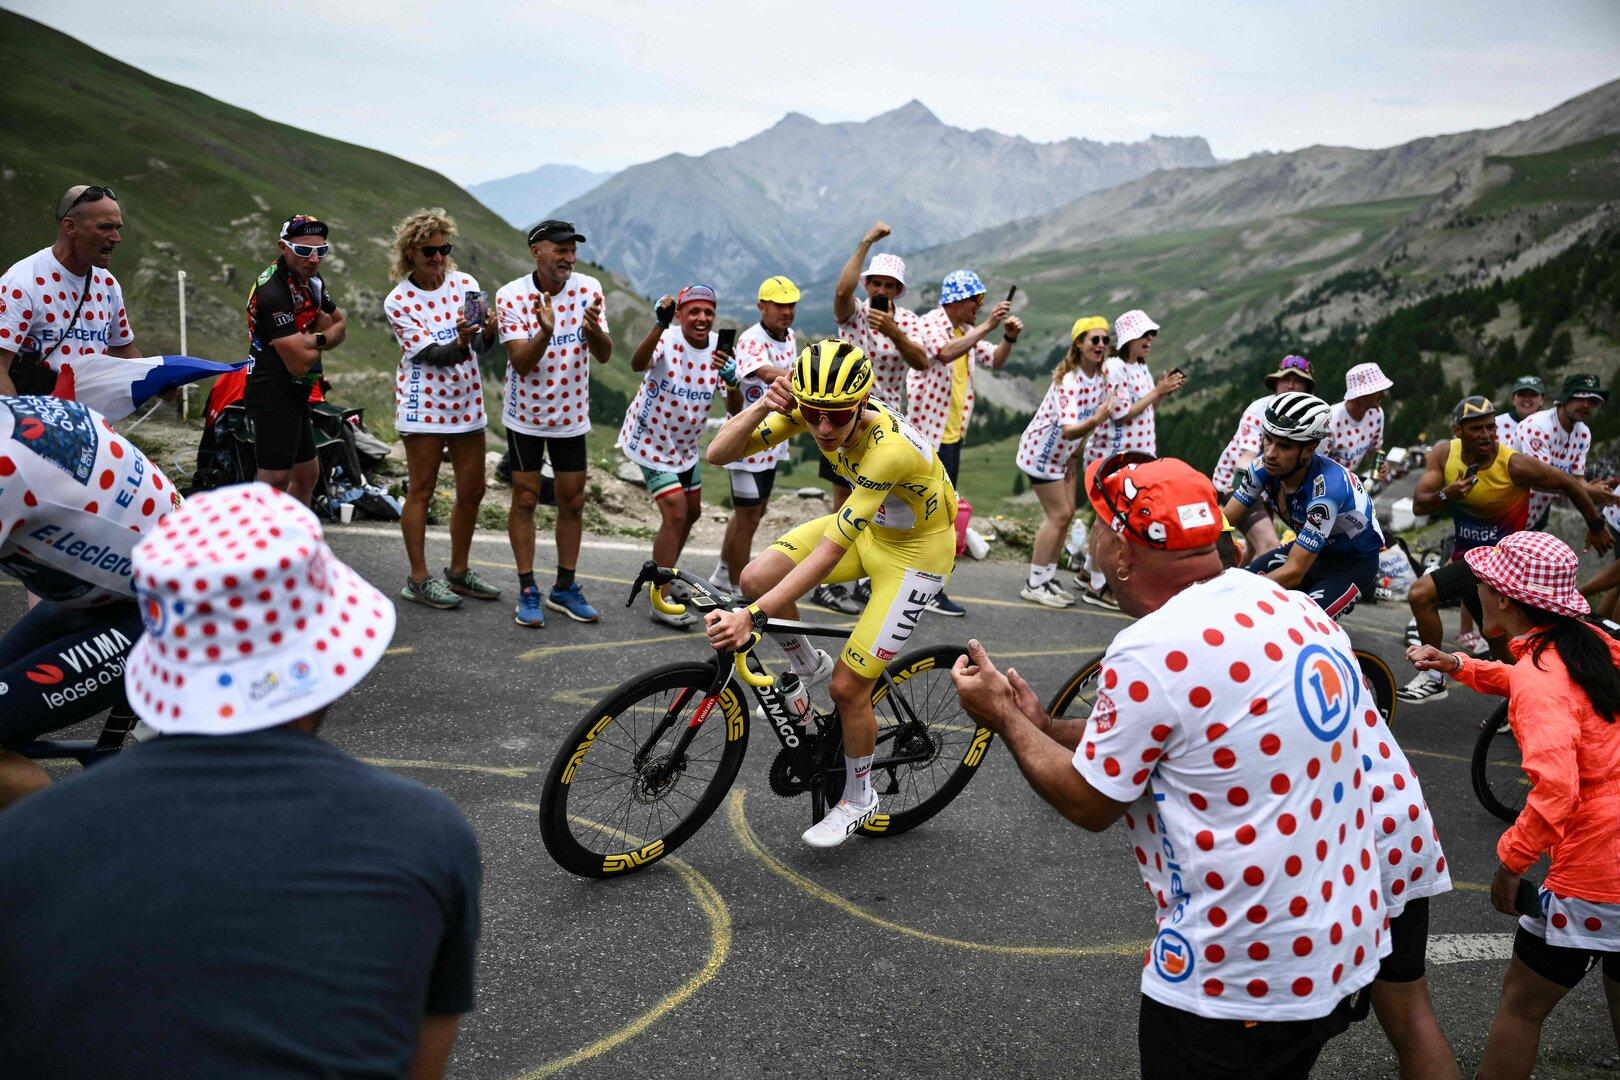 Aufregung bei der Tour de France: Messung oder Doping bei den Topstars?